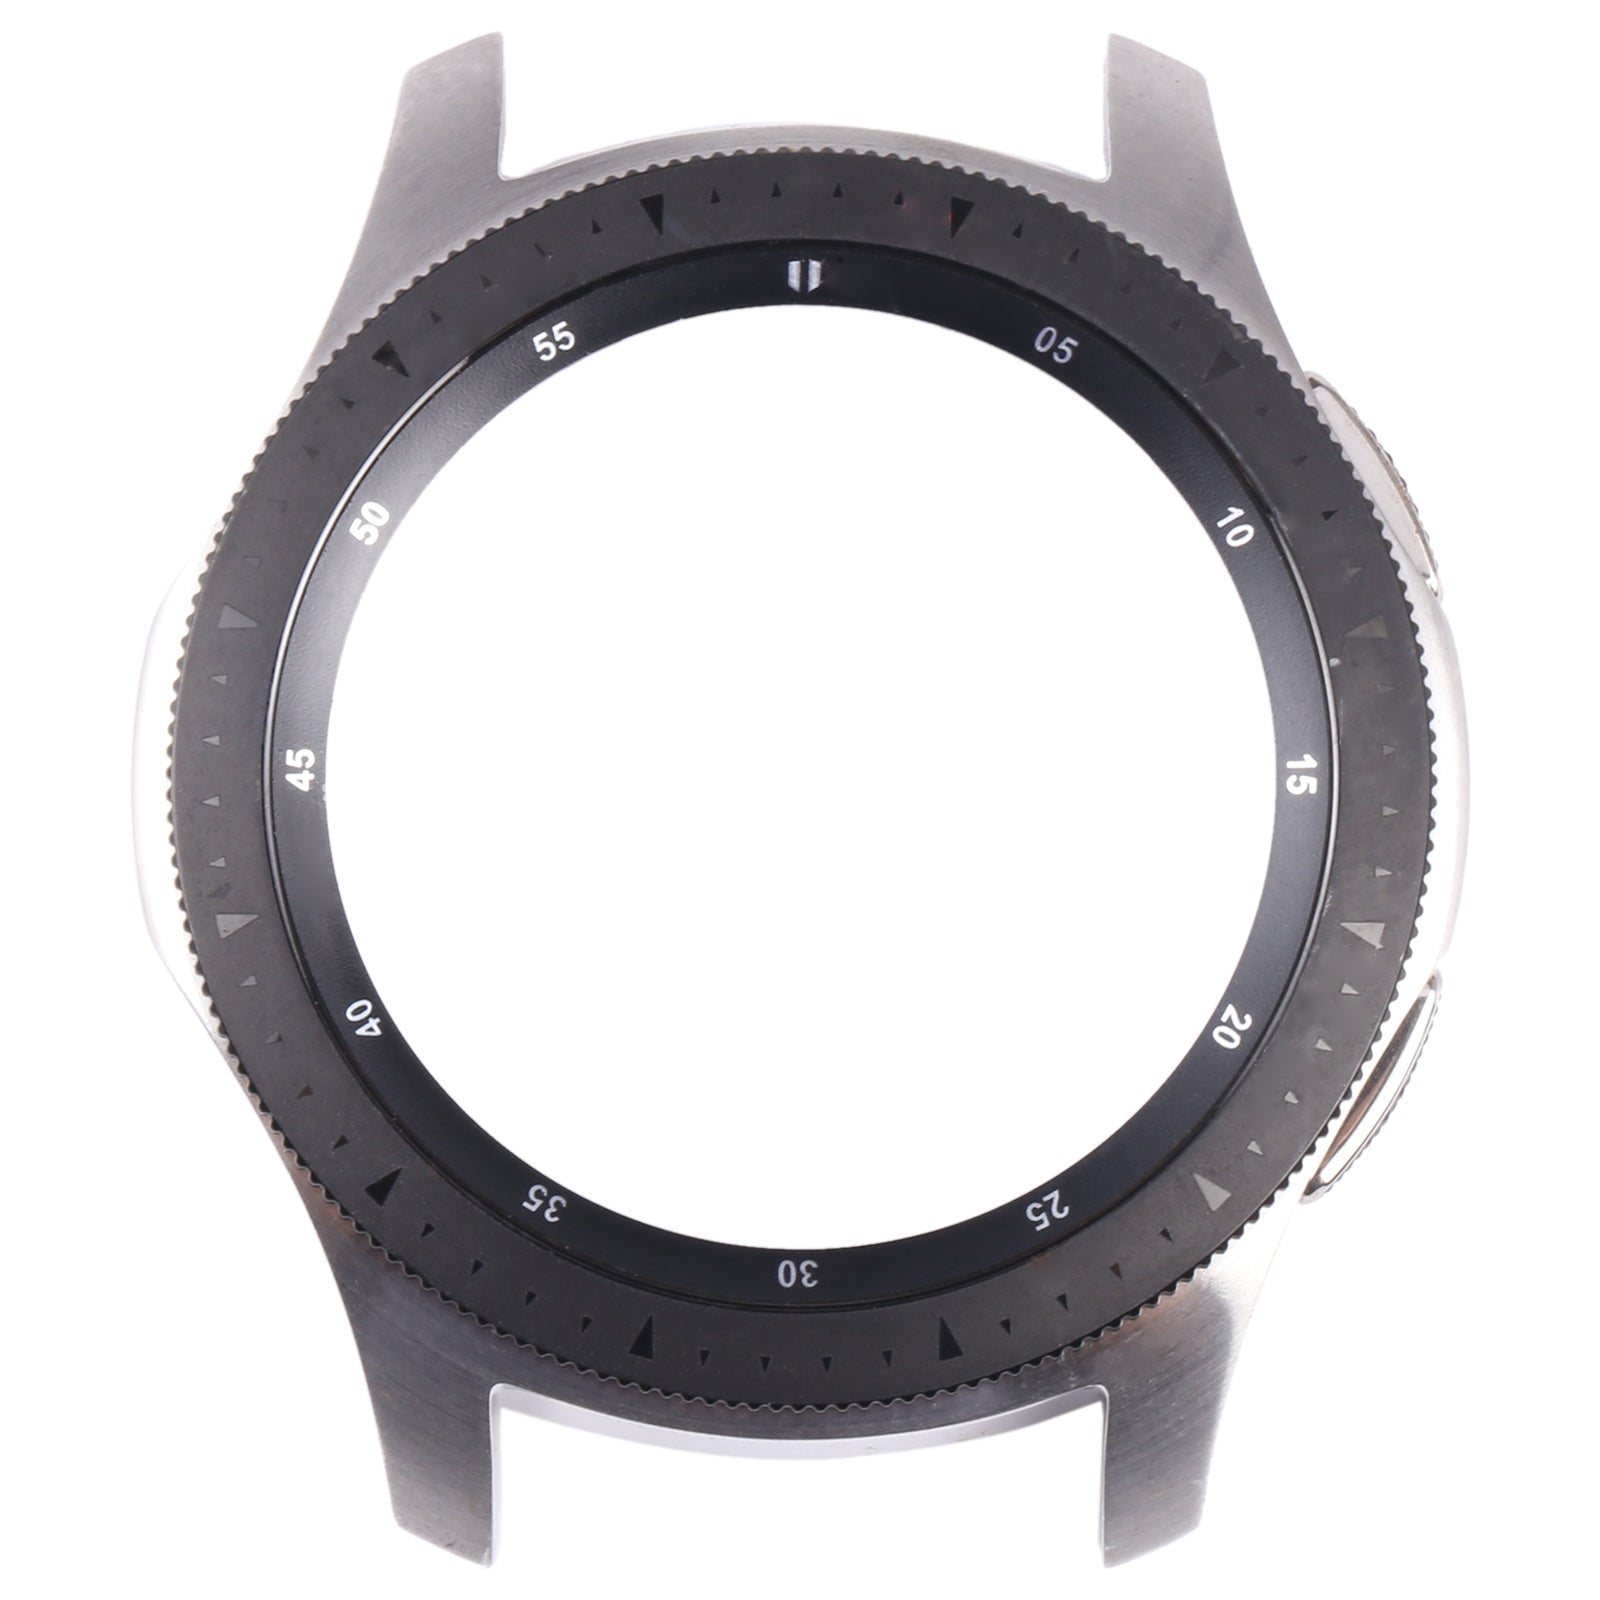 Chasis Marco Frontal Pantalla Samsung Galaxy Watch 46mm R800 Plata